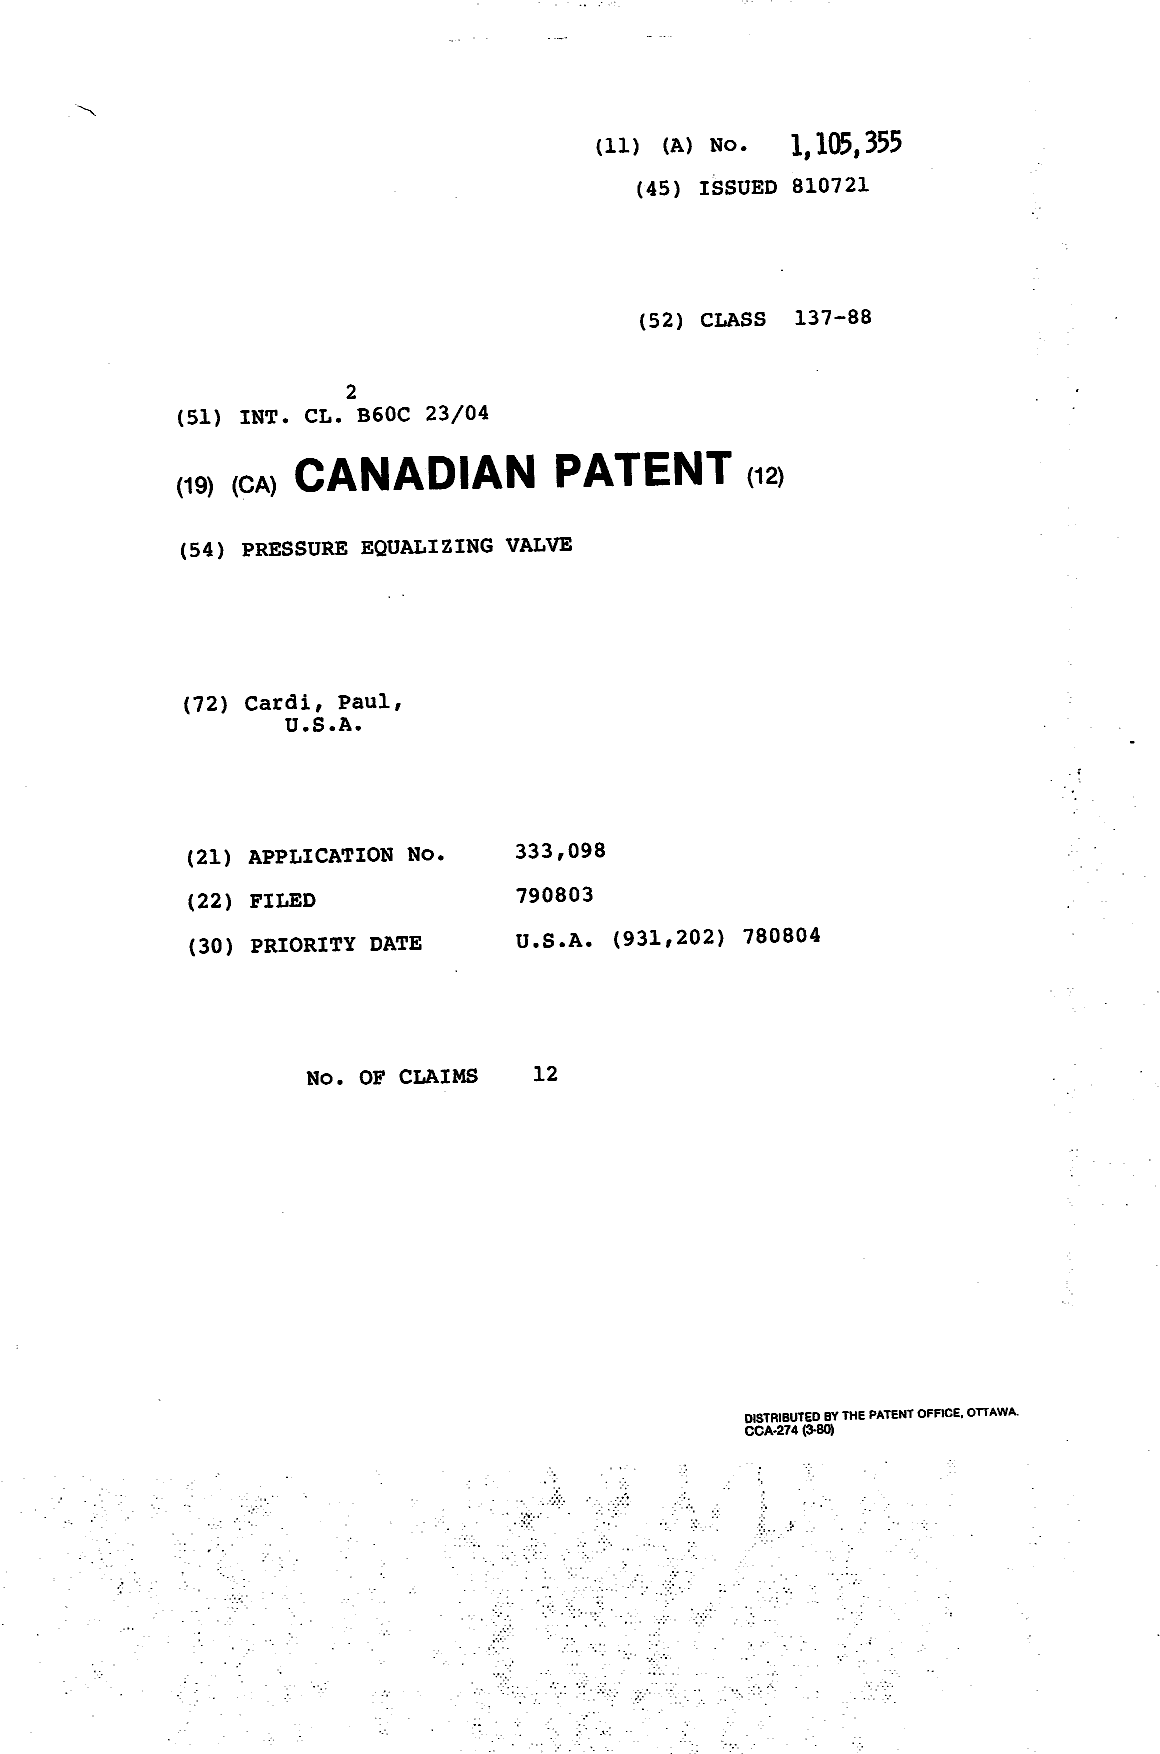 Document de brevet canadien 1105355. Page couverture 19940316. Image 1 de 1